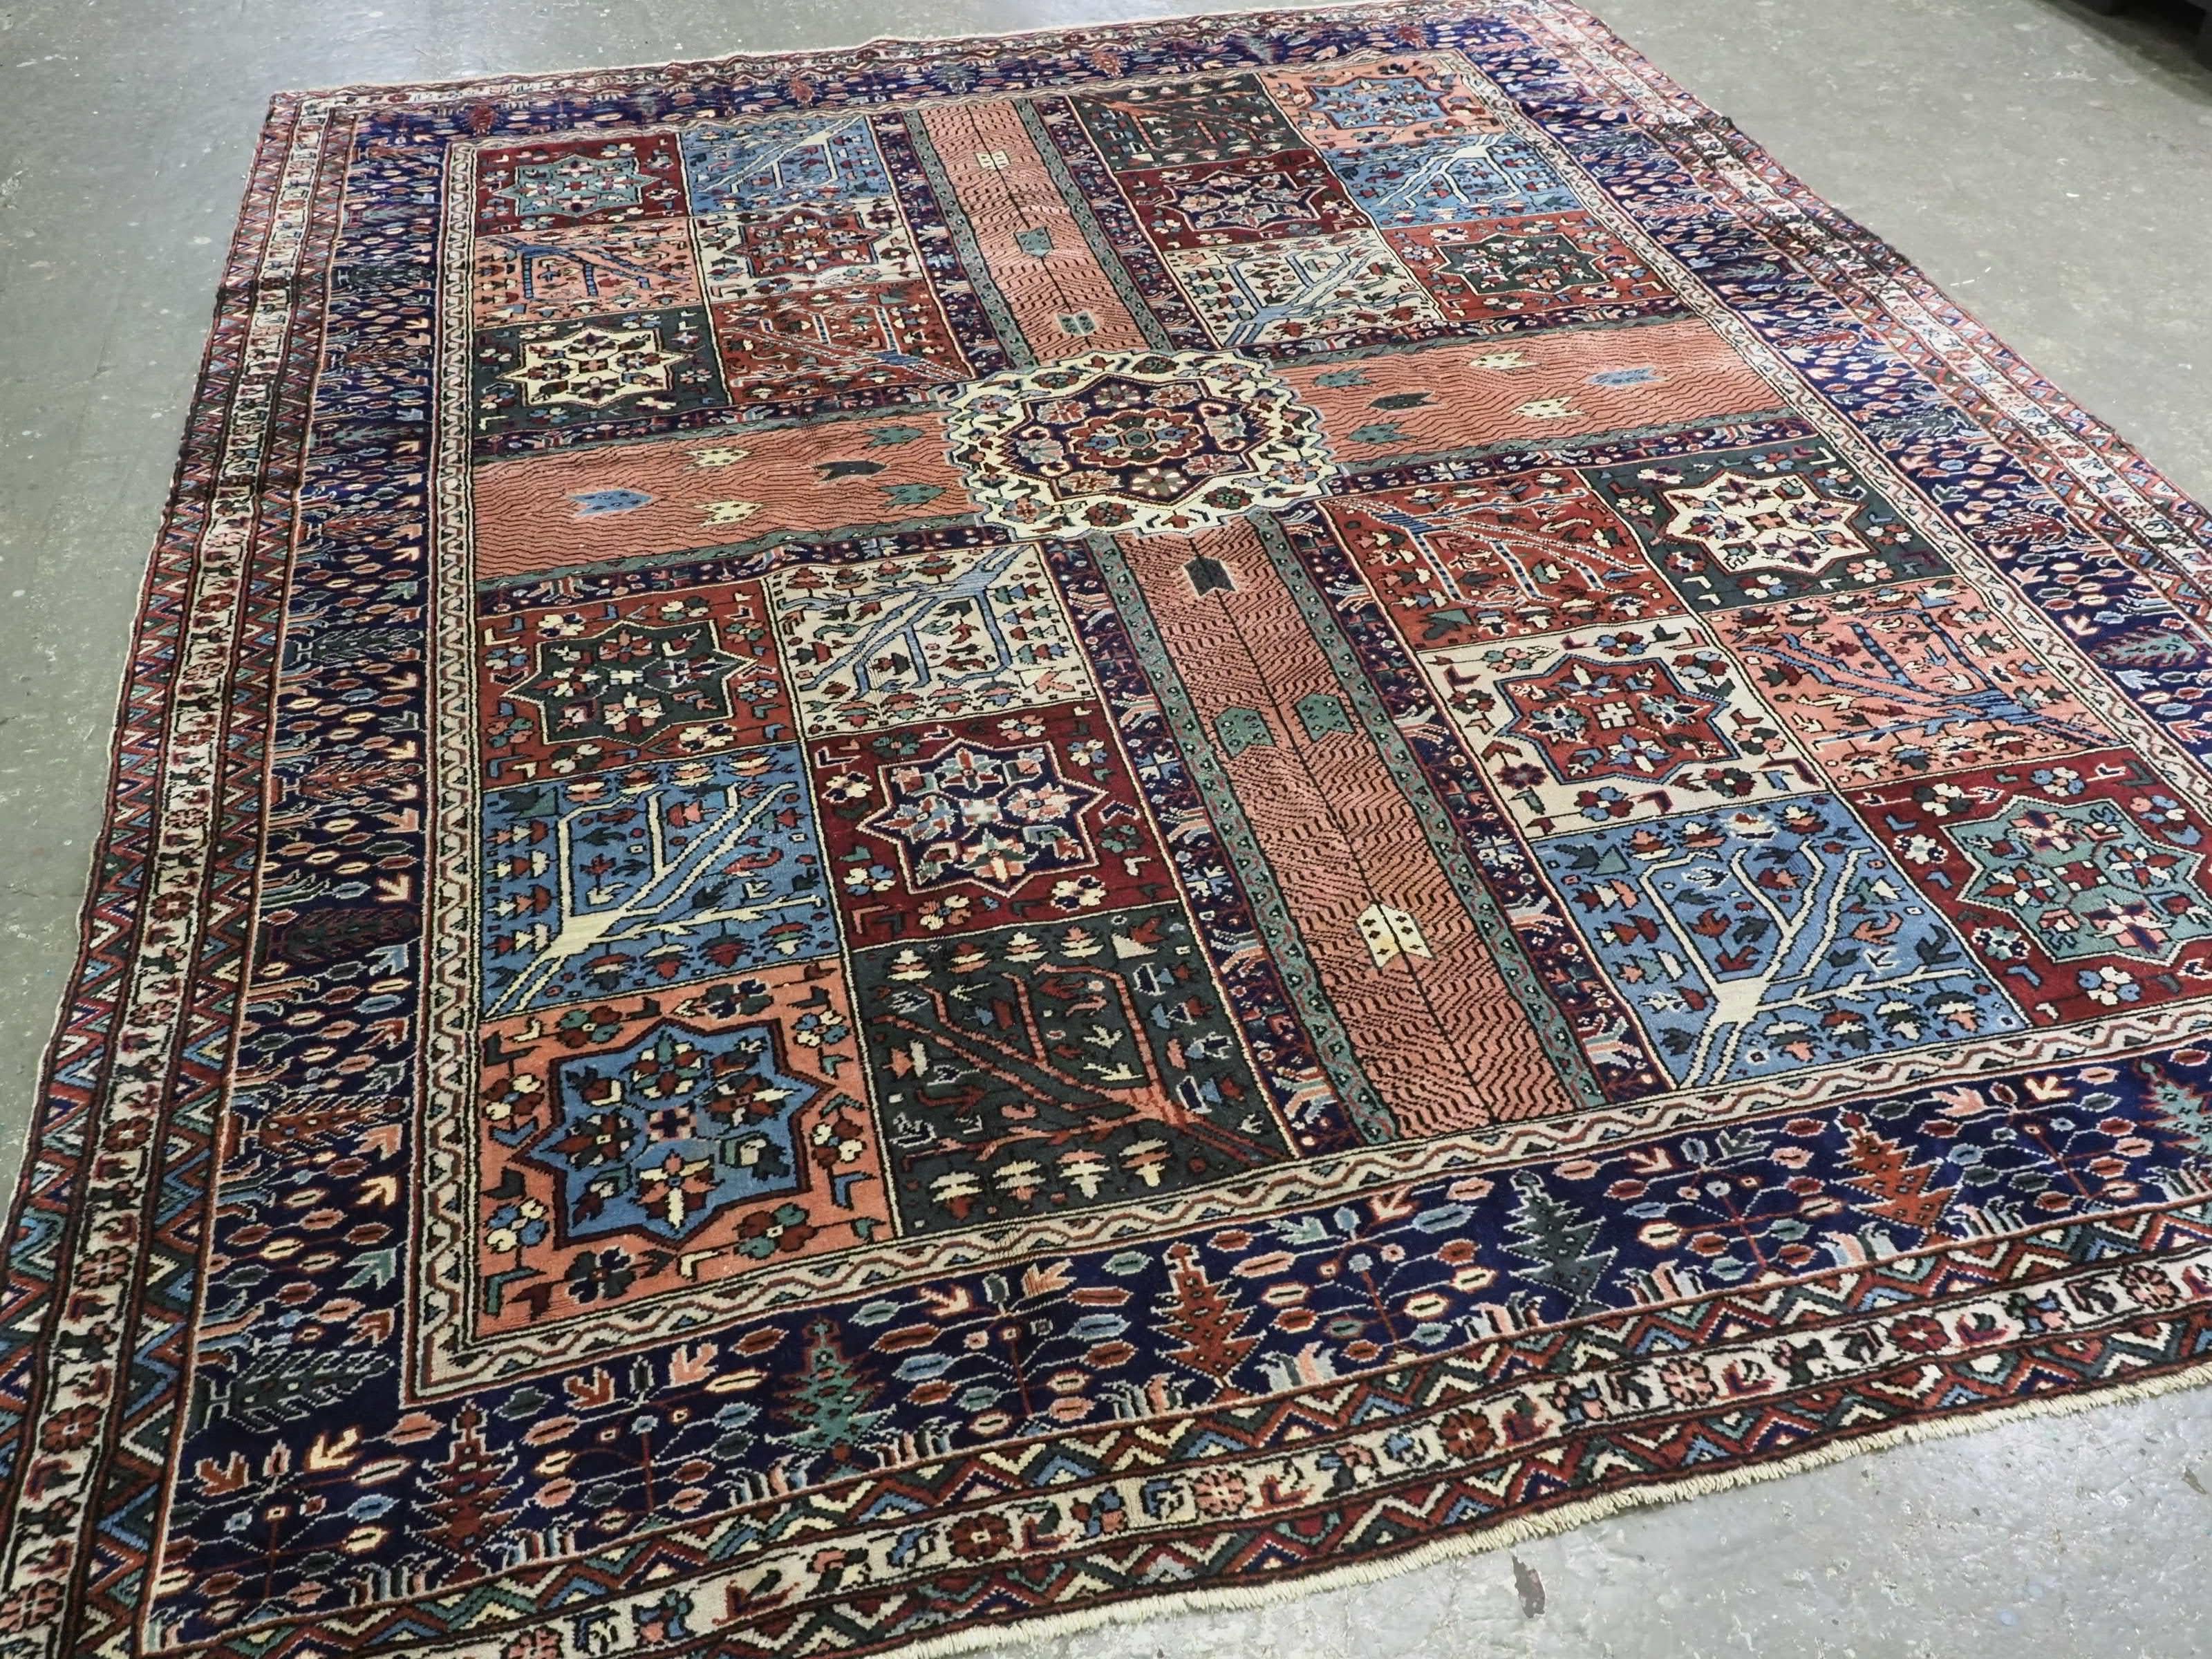 Größe: 332 x 268 cm (10ft 11in x 8ft 10in).

Antiker türkischer Kula-Teppich mit traditionellem persischen Garten-Design.

Um 1900.

Dieser exzellente Teppich ist mit einem traditionellen Gartendesign gezeichnet, mit Wasserläufen und blühenden